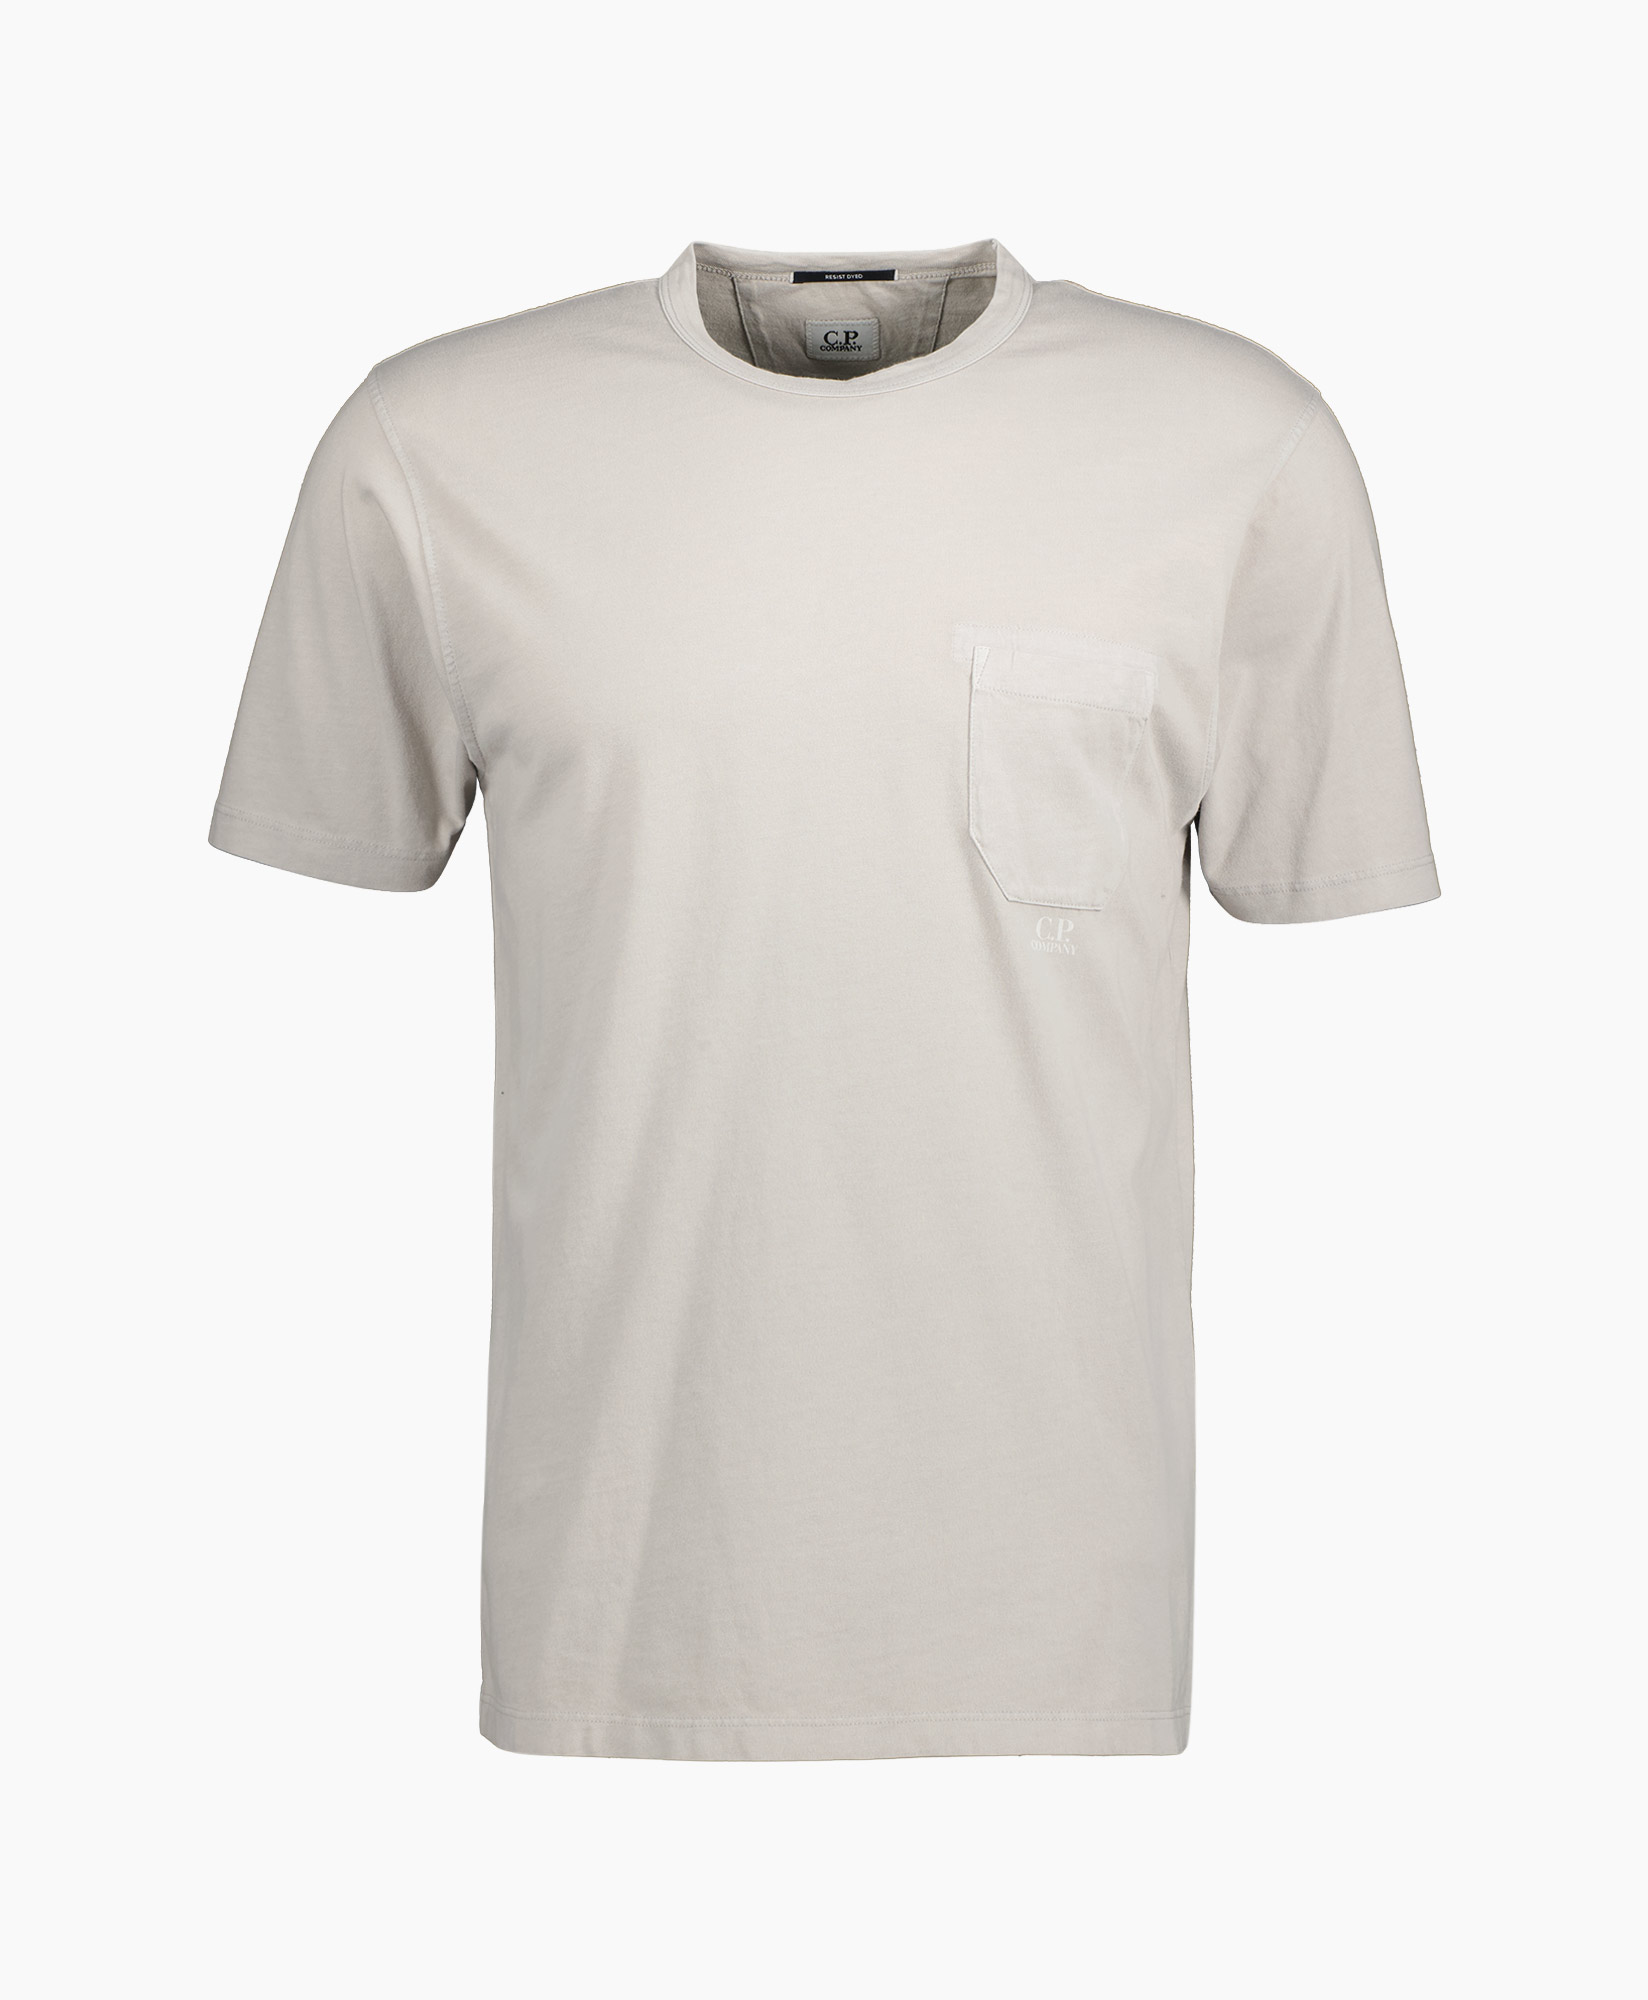 Cp Company T-shirt S182a-005431r Grijs